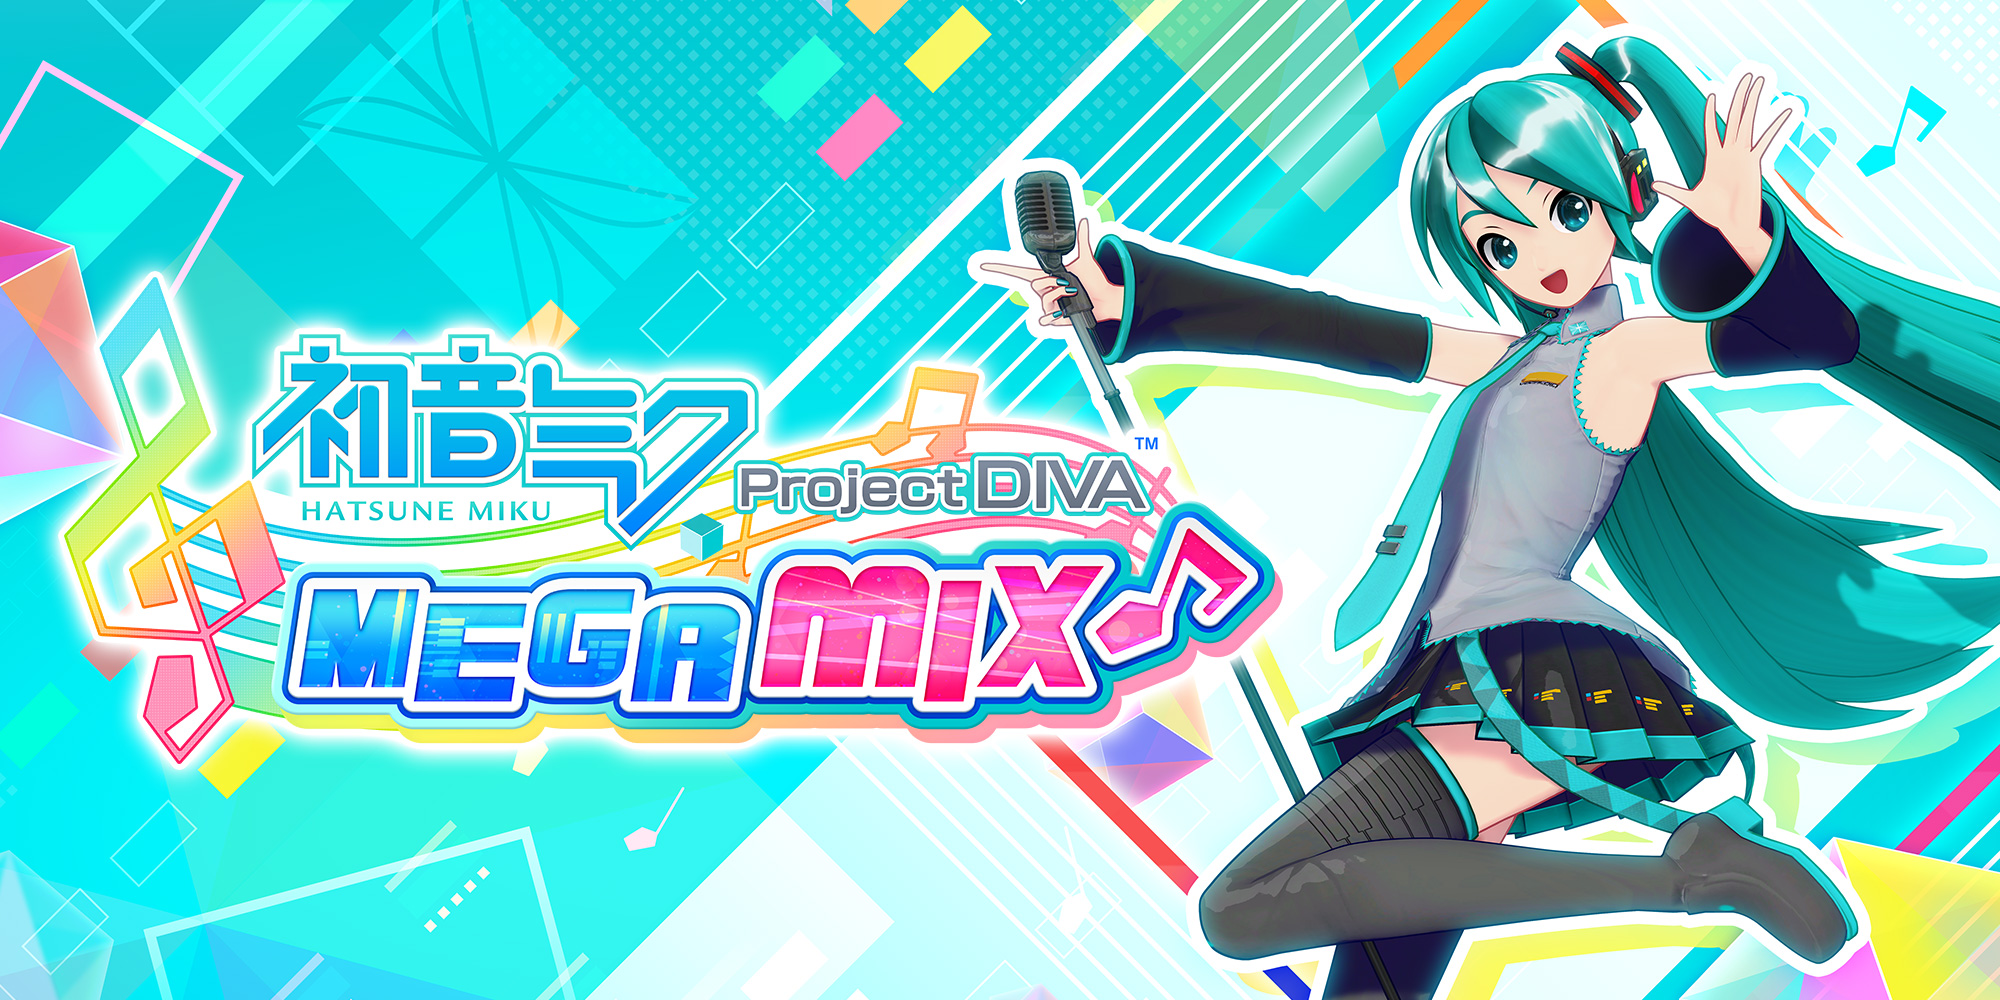 Обзор Hatsune Miku: Project DIVA Mega Mix+ - Будь единым с ритмом